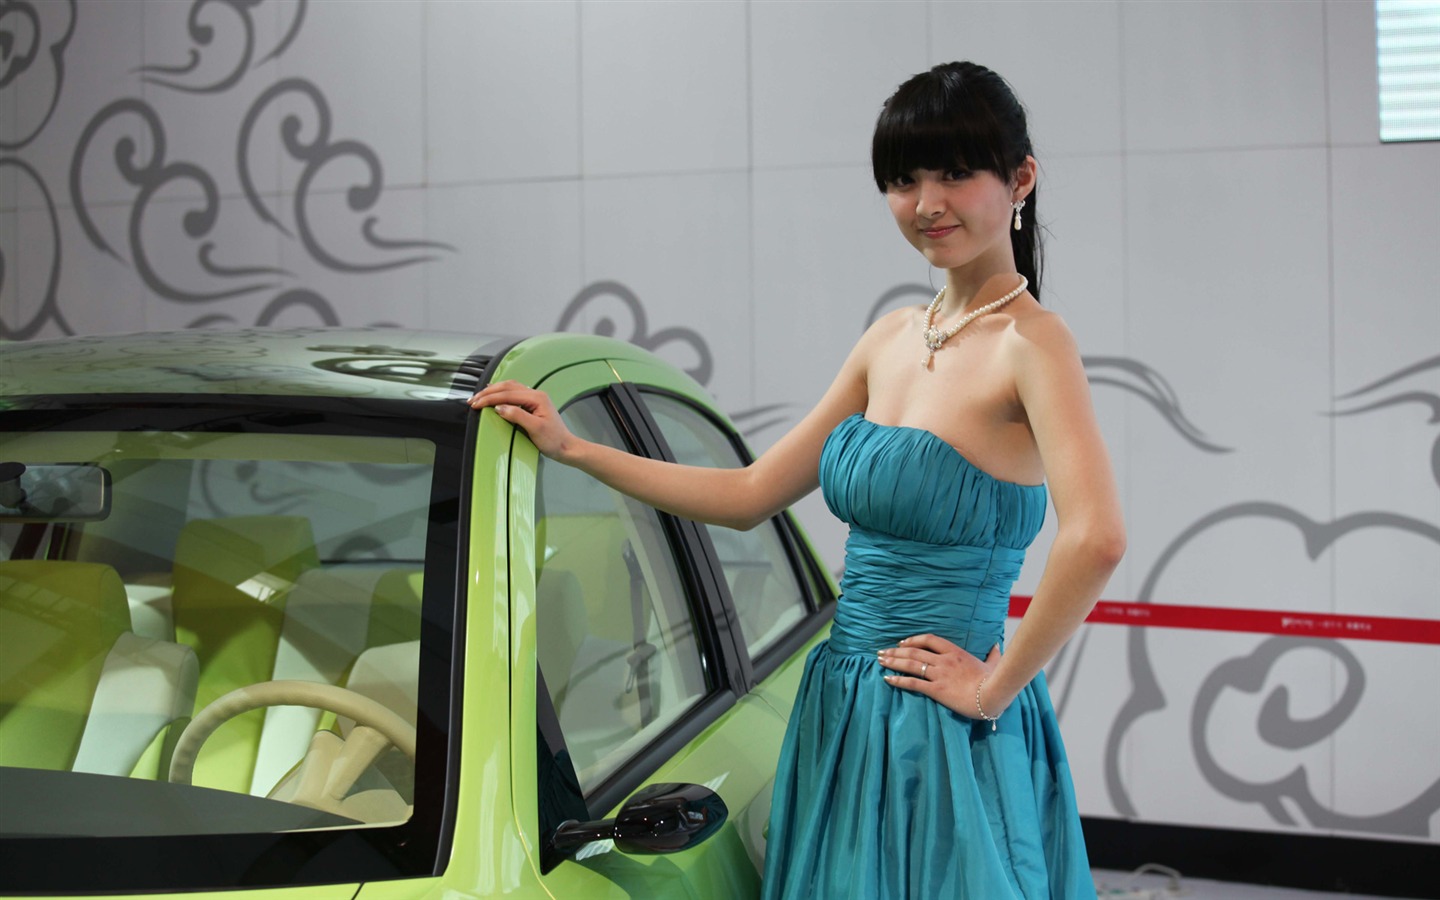 2010 v Pekingu Mezinárodním autosalonu krása (1) (vítr honí mraky práce) #34 - 1440x900